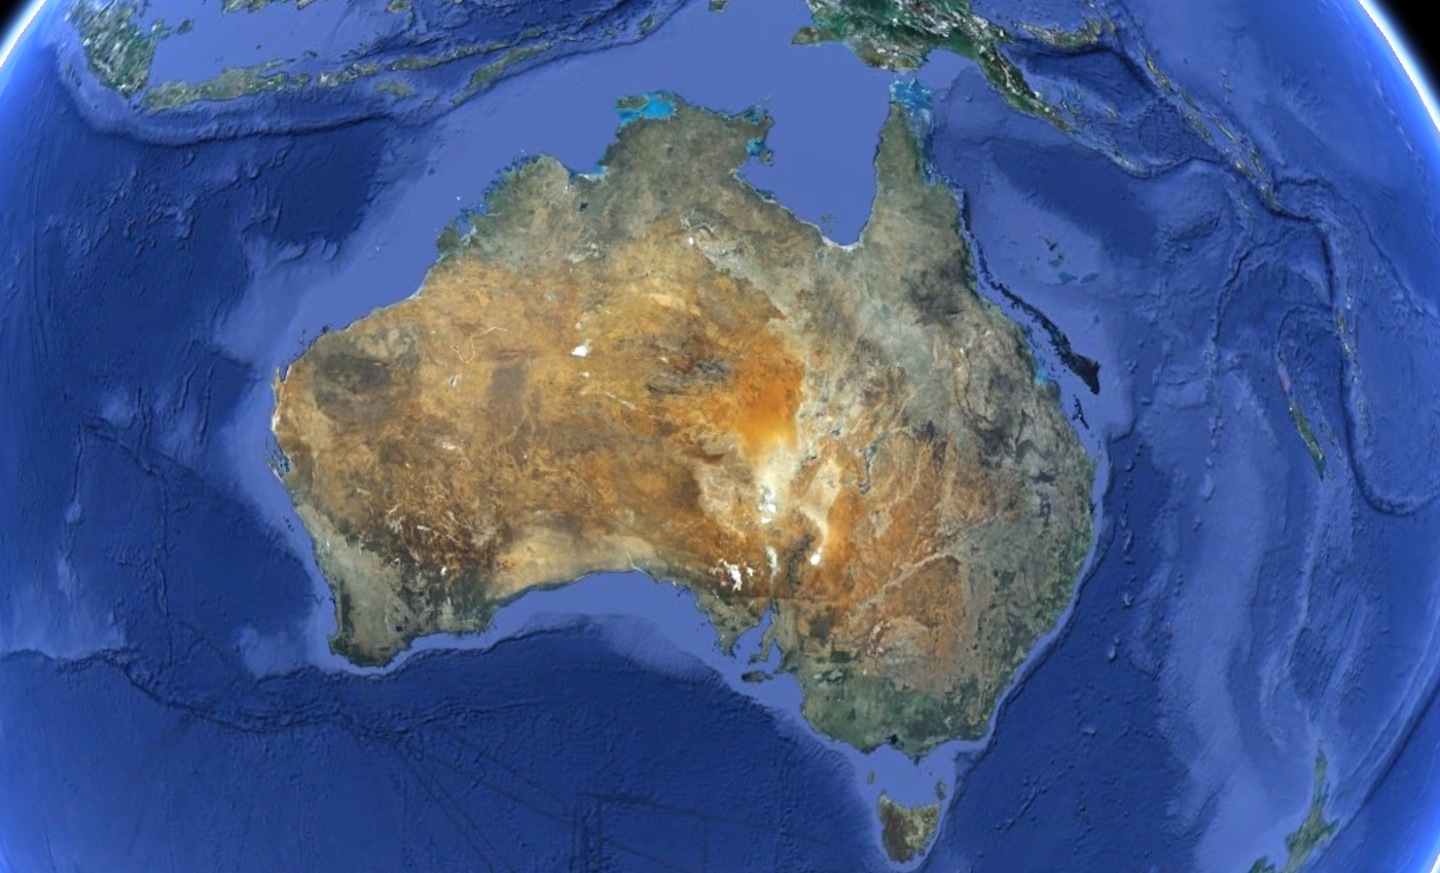 континент австралия